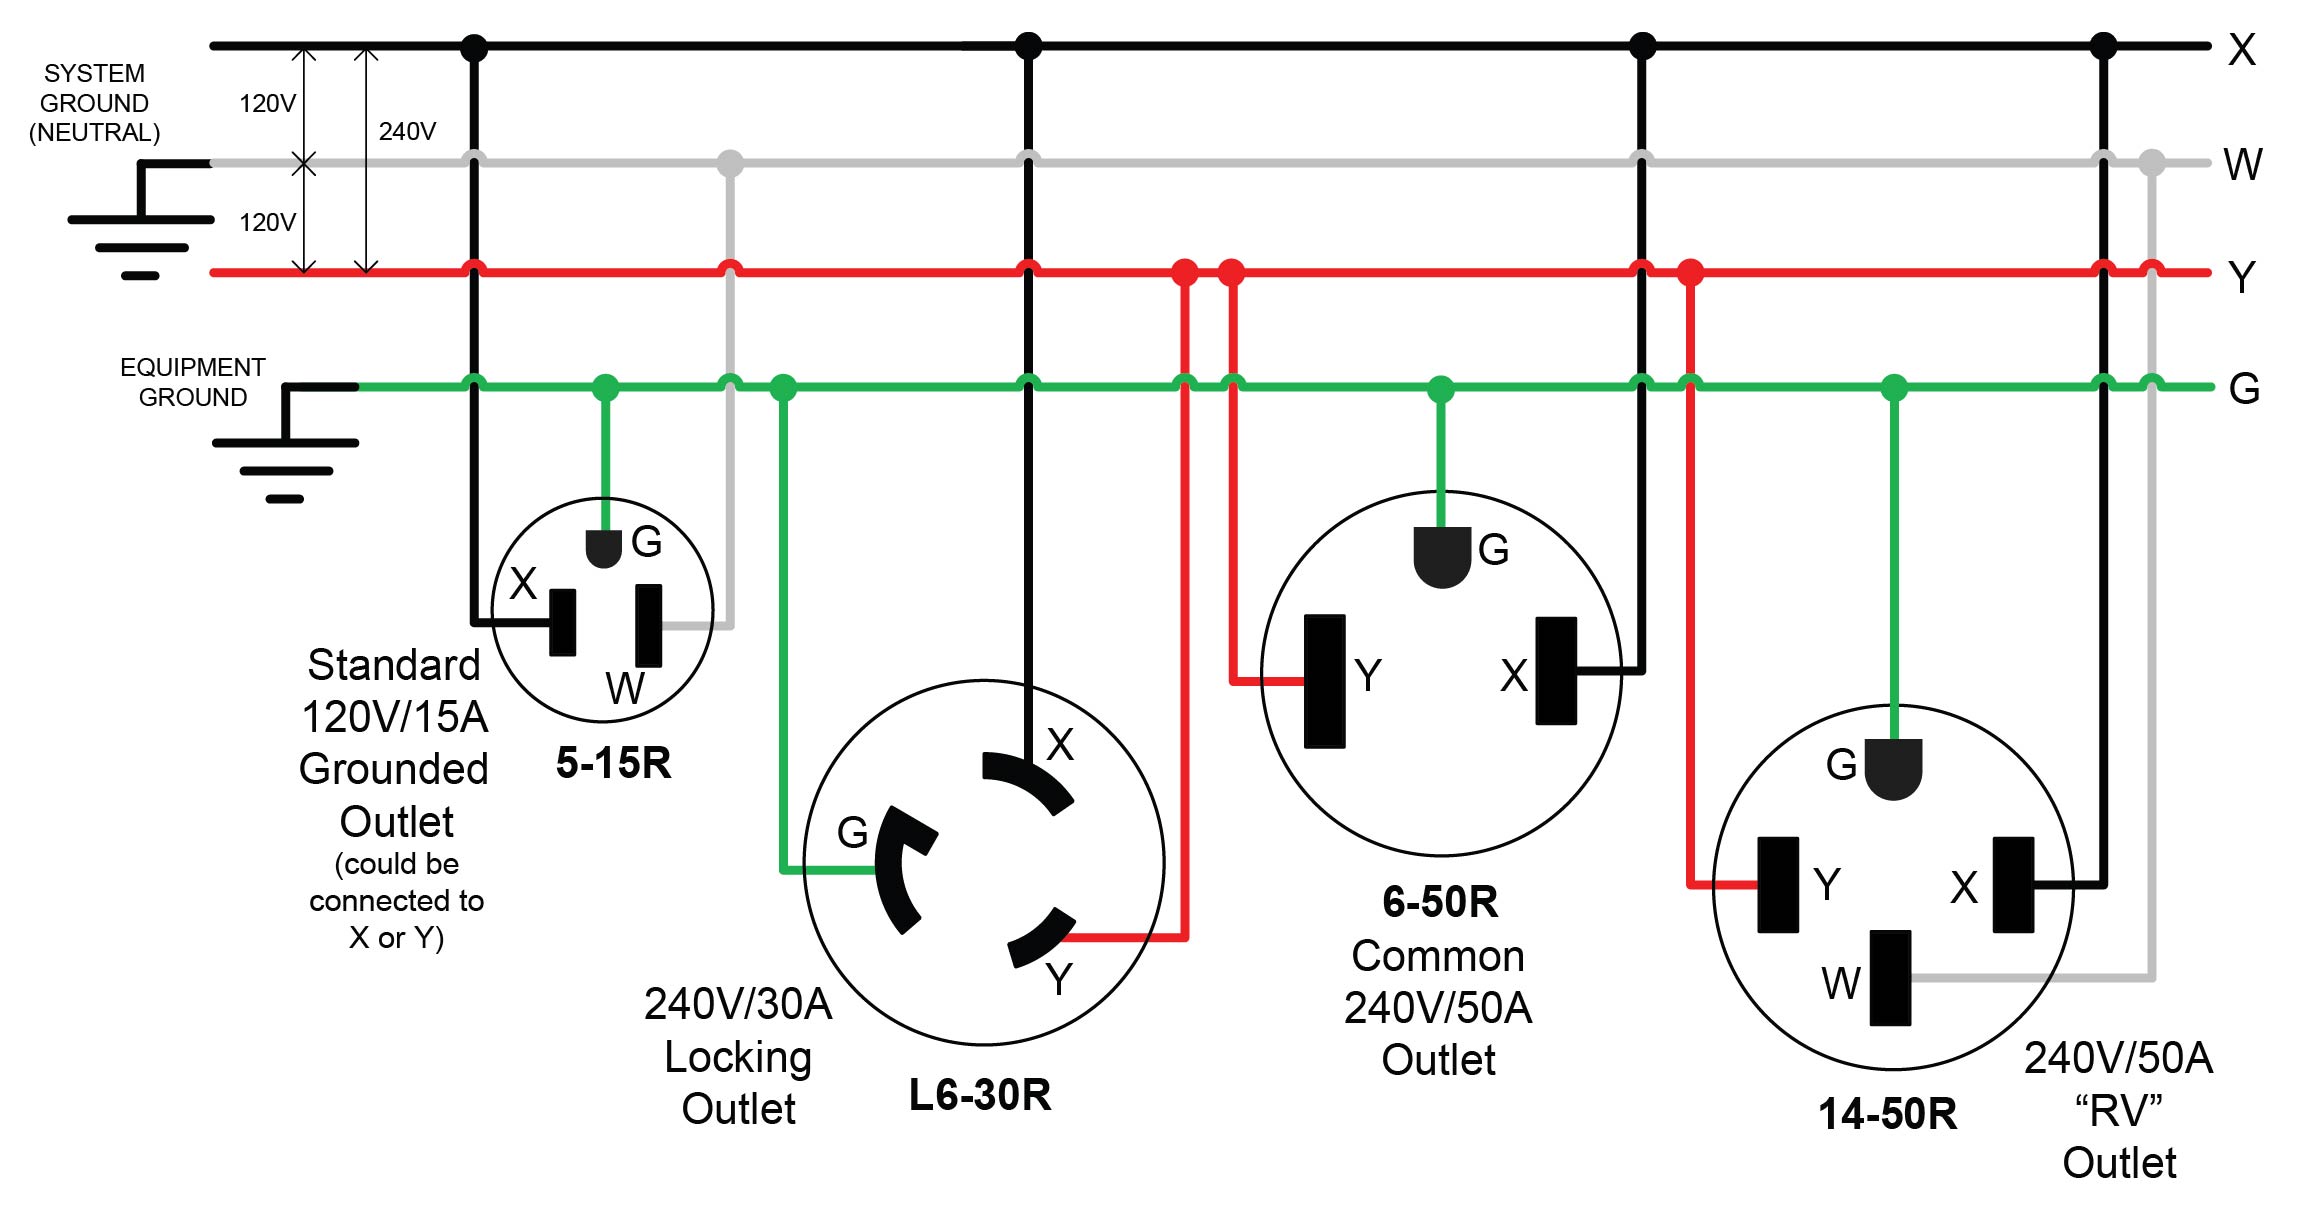 l6-20r wiring diagram